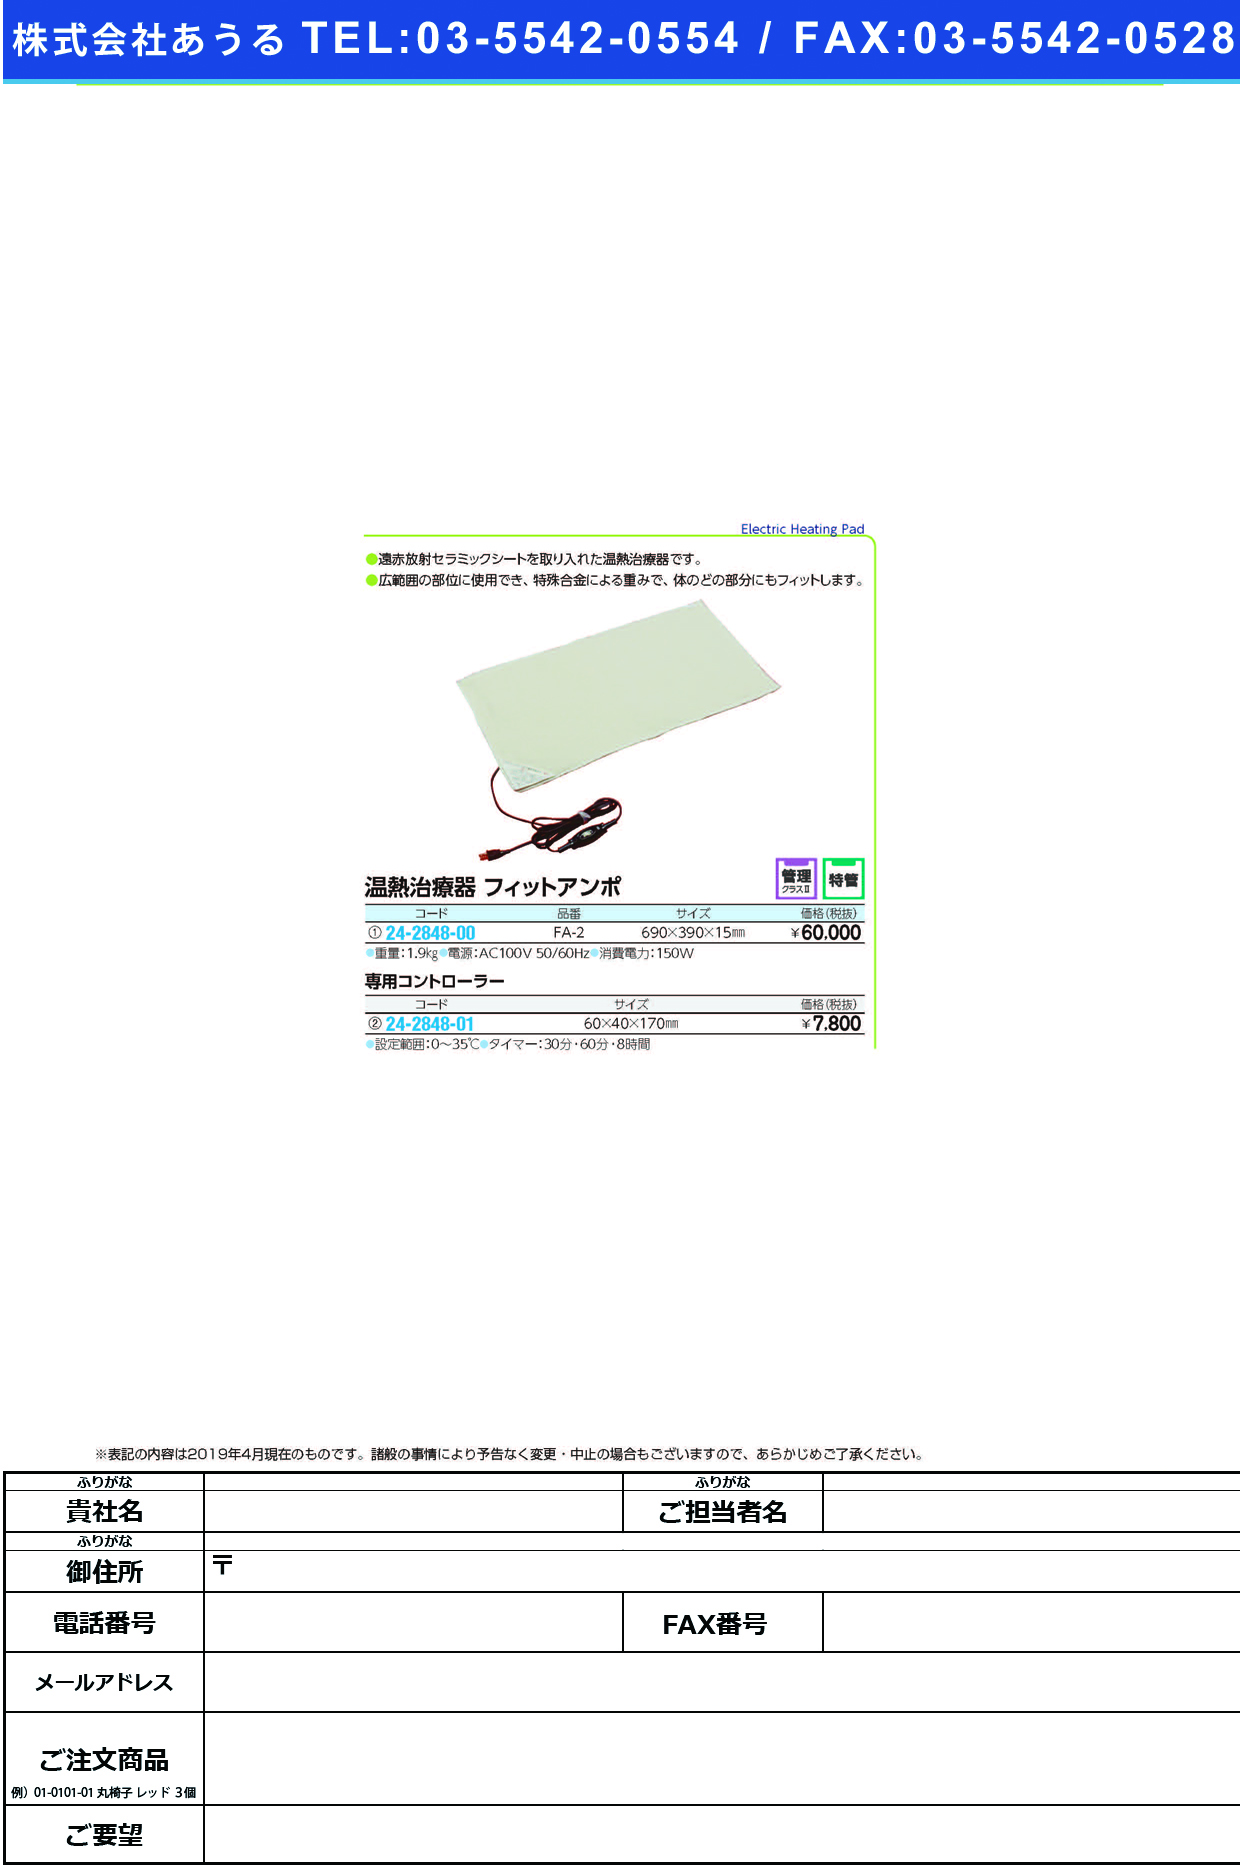 (24-2848-00)温熱治療器フィットアンポ FA-2 ｵﾝﾈﾂﾁﾘｮｳｷﾌｨｯﾄｱﾝﾎﾟ【1台単位】【2019年カタログ商品】